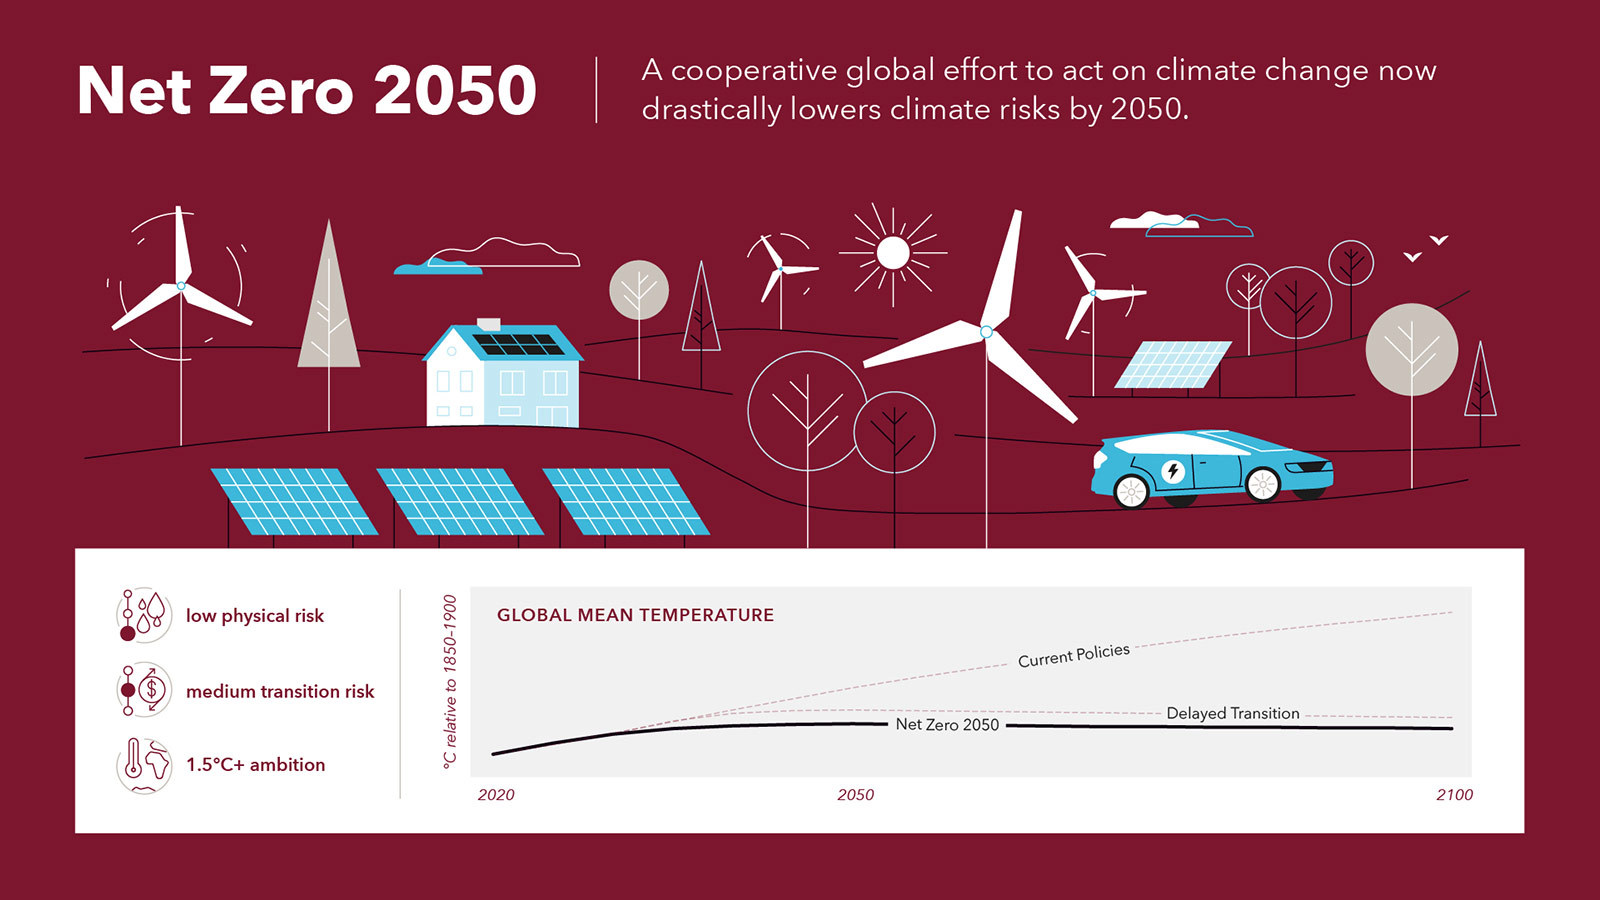 情景 2：净零，全球合作应对气候变化，到 2050 年将大幅降低气候风险。